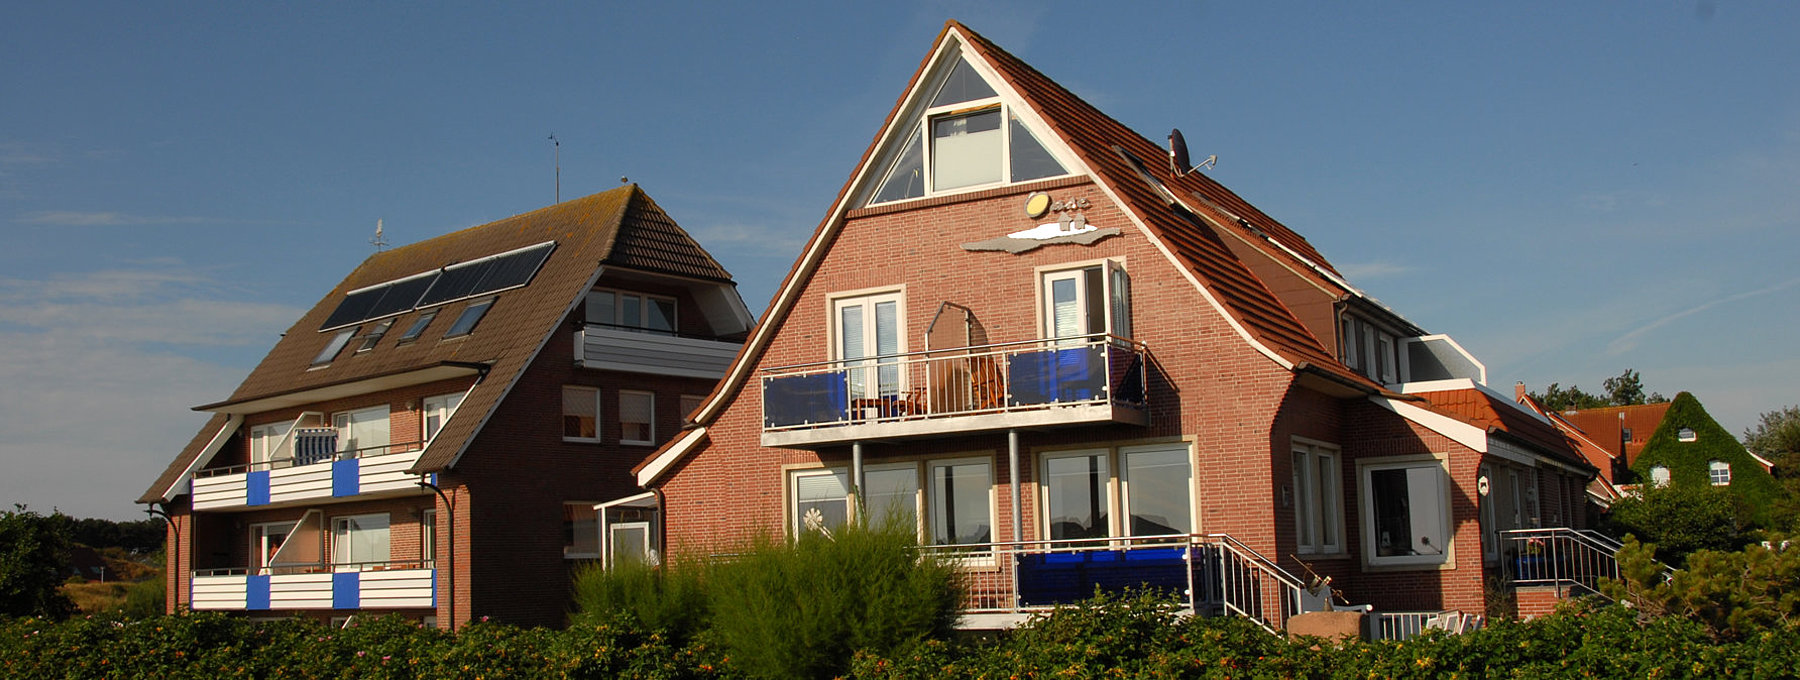 Backstein-Ferienhäuser mit Balkonen und grüner Hecke